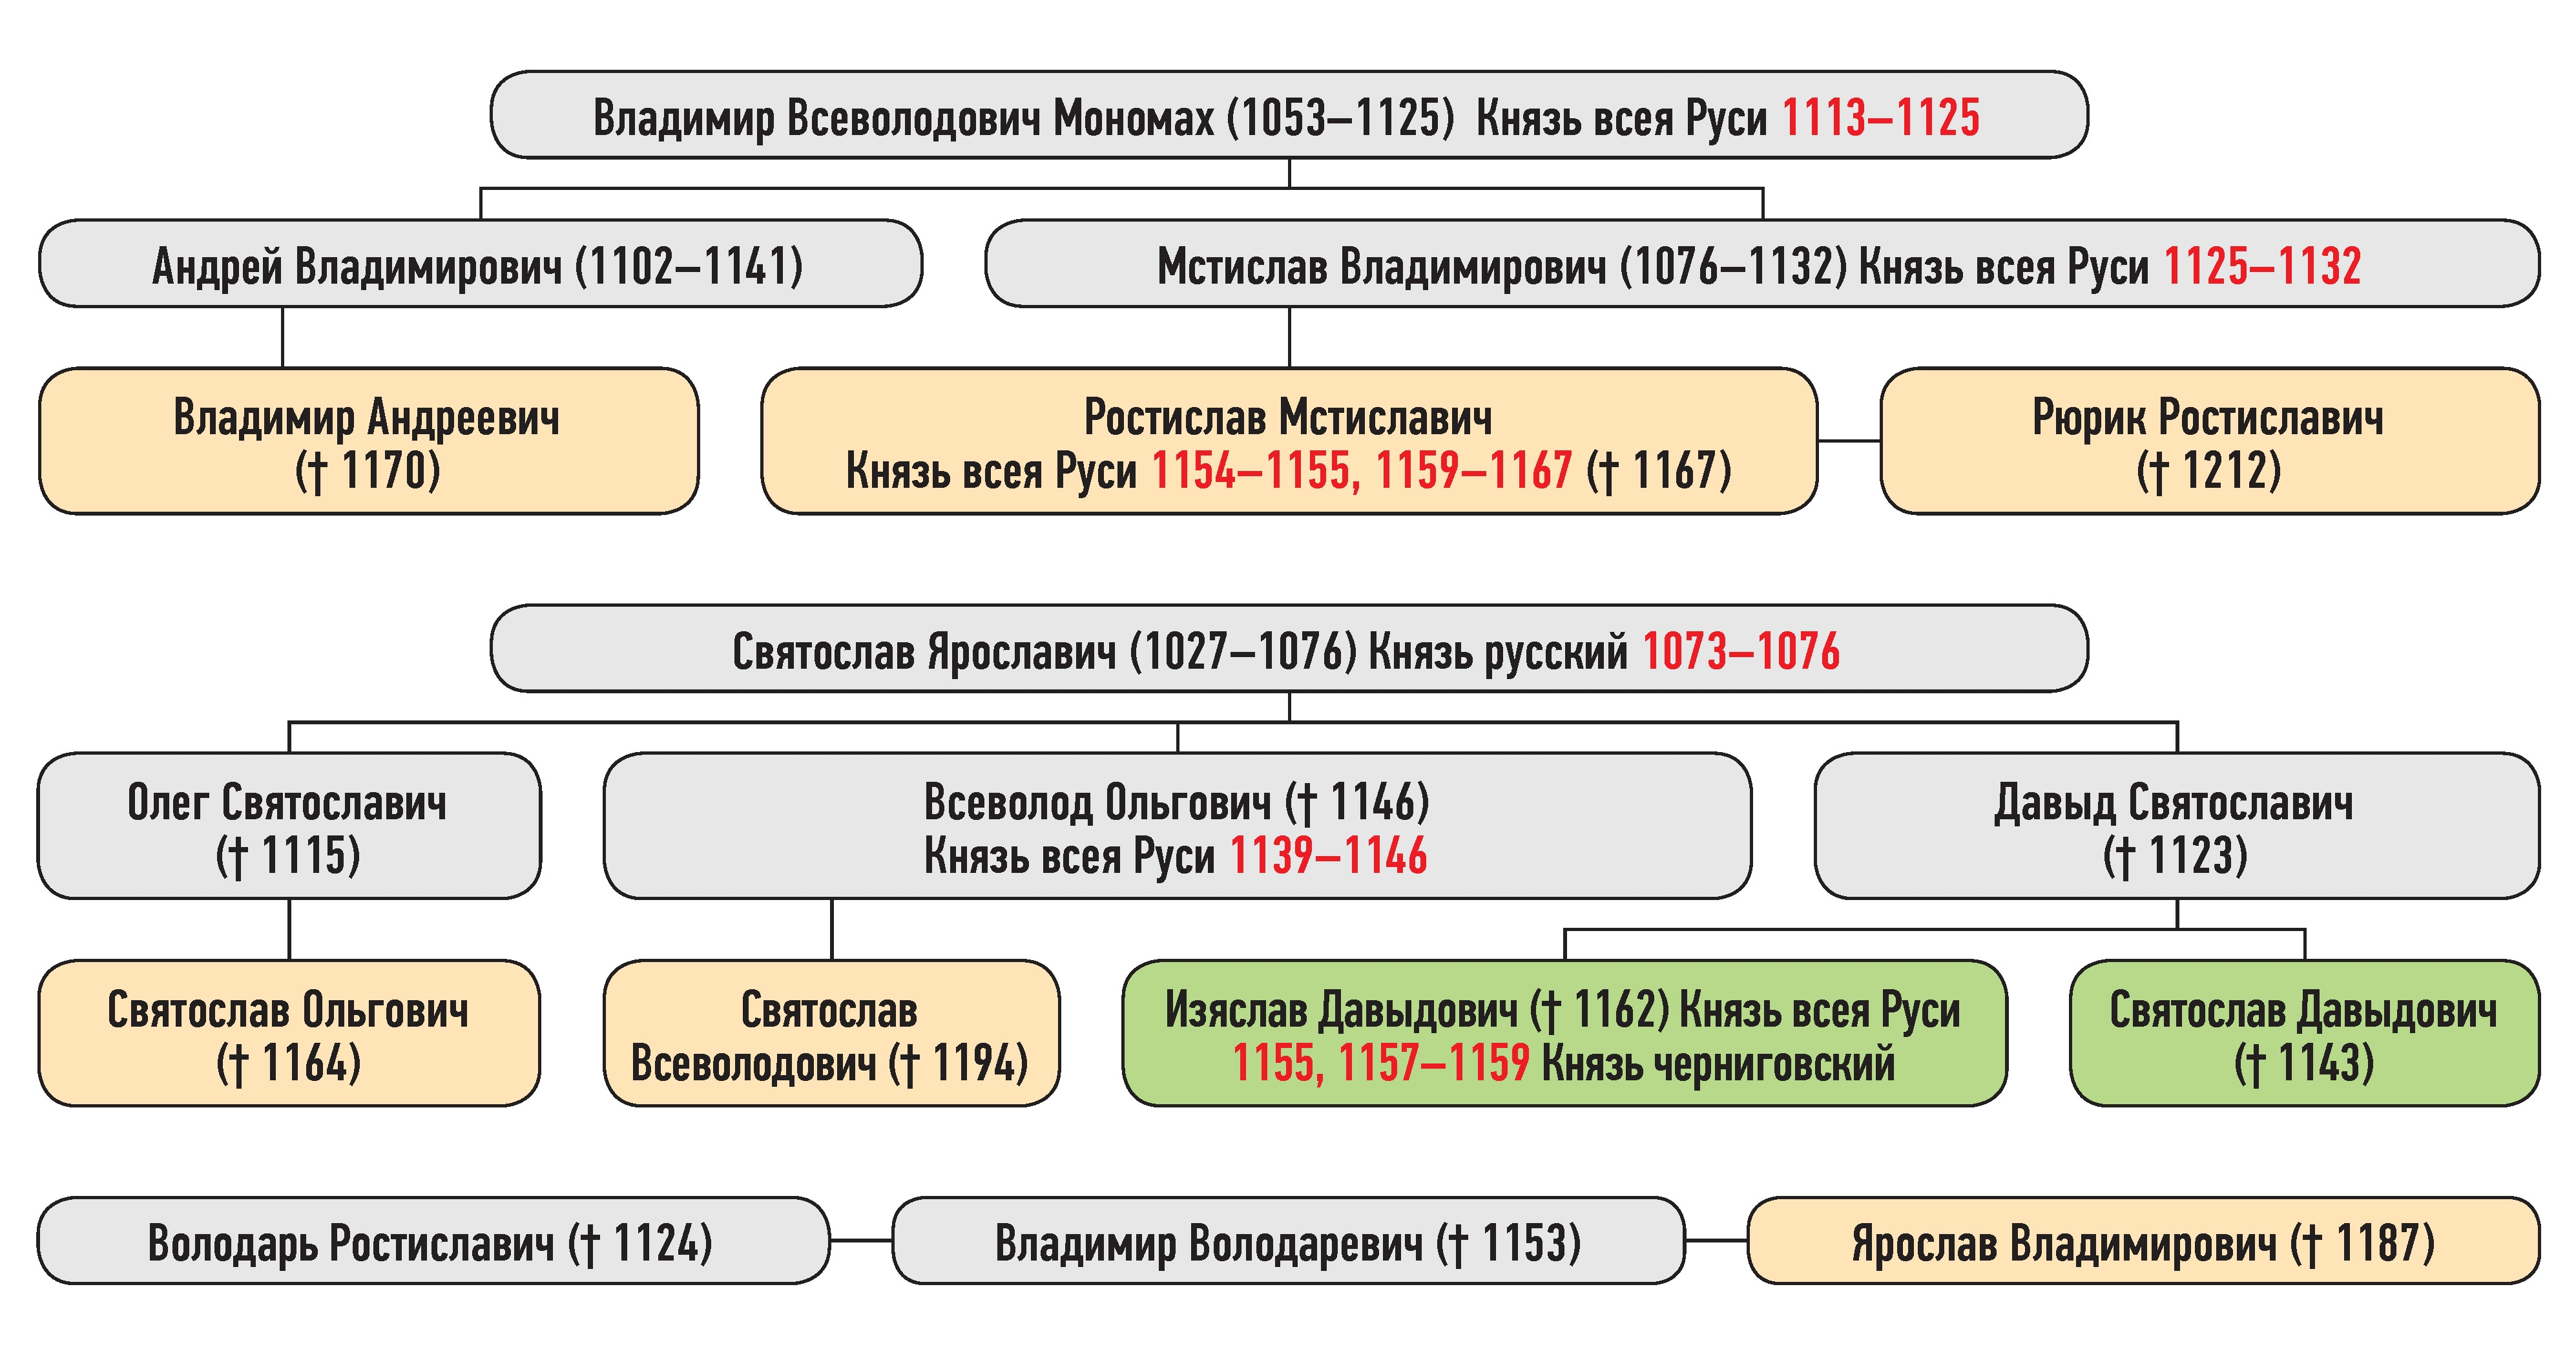 Генеалогическая схема к усобице Изяслава Давыдовича и Святослава Ольговича летом 1159 г.